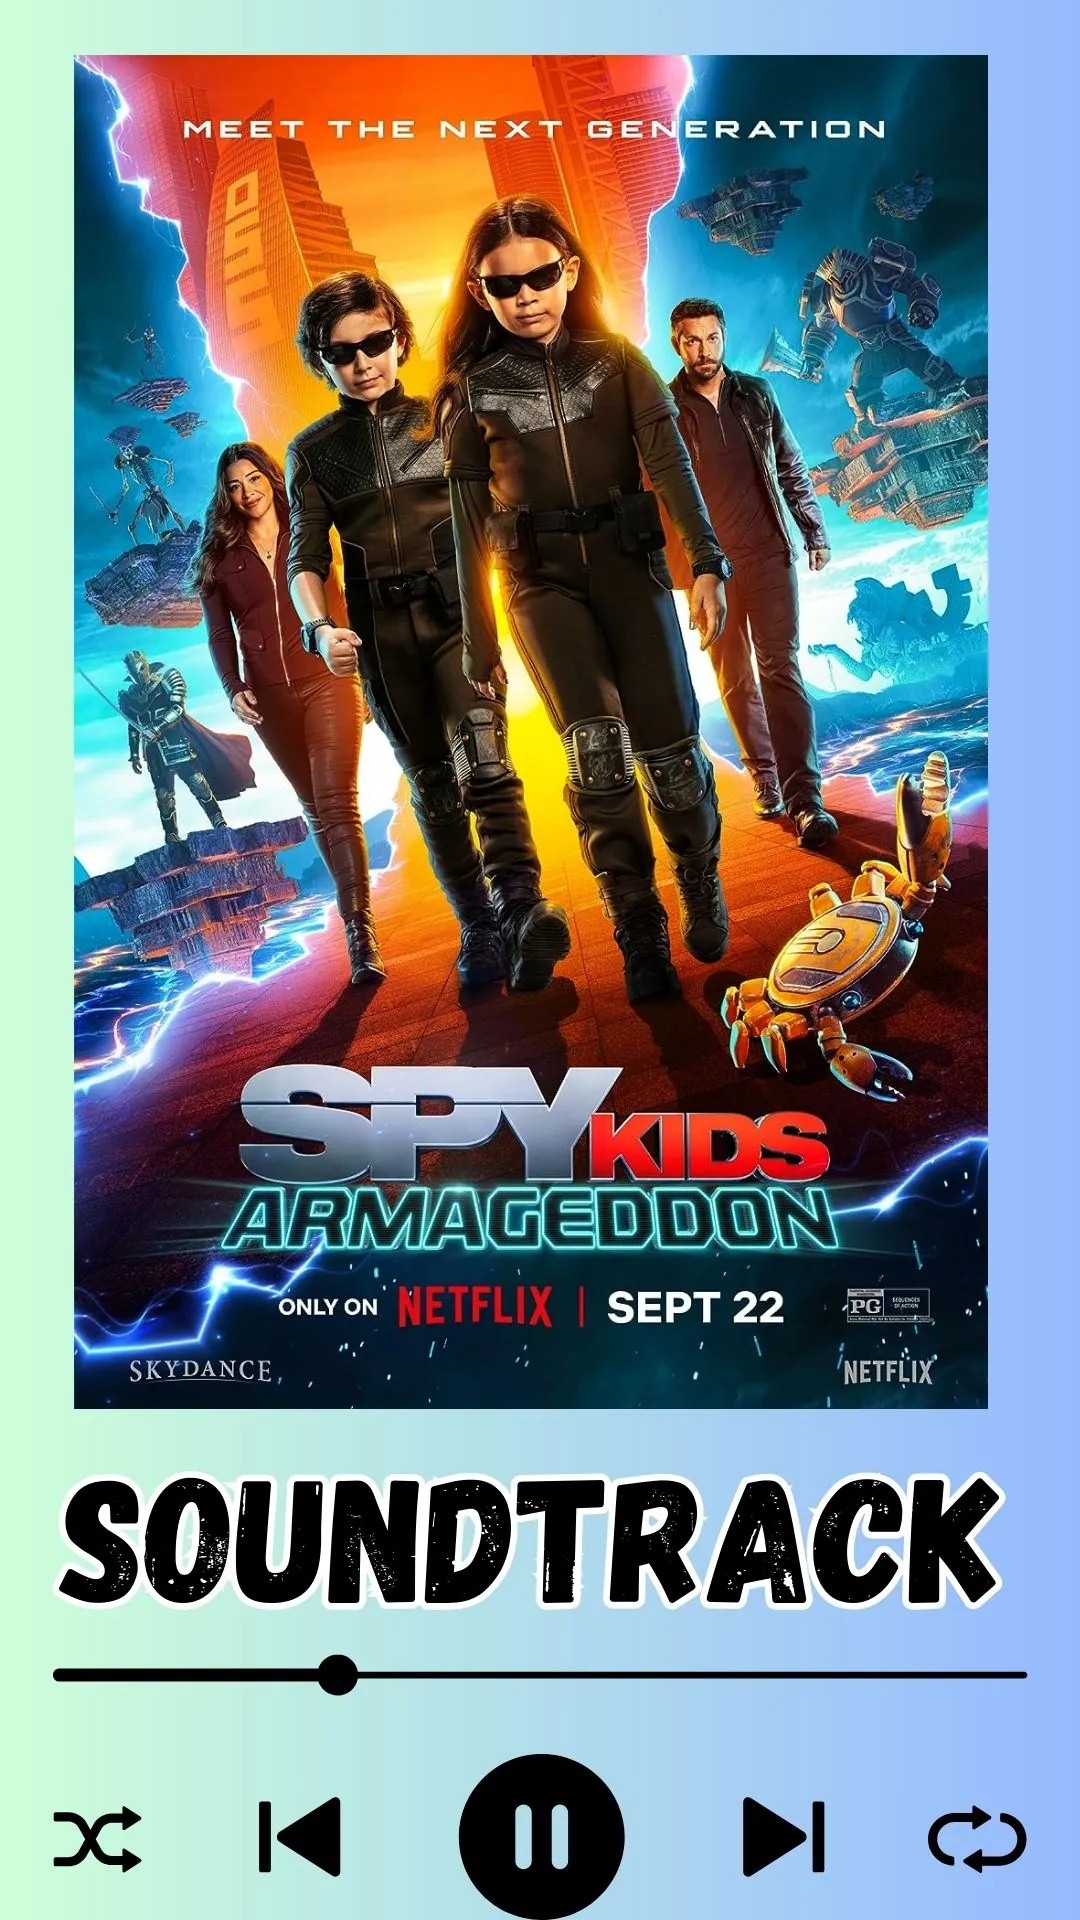 Spy Kids Armageddon Soundtrack